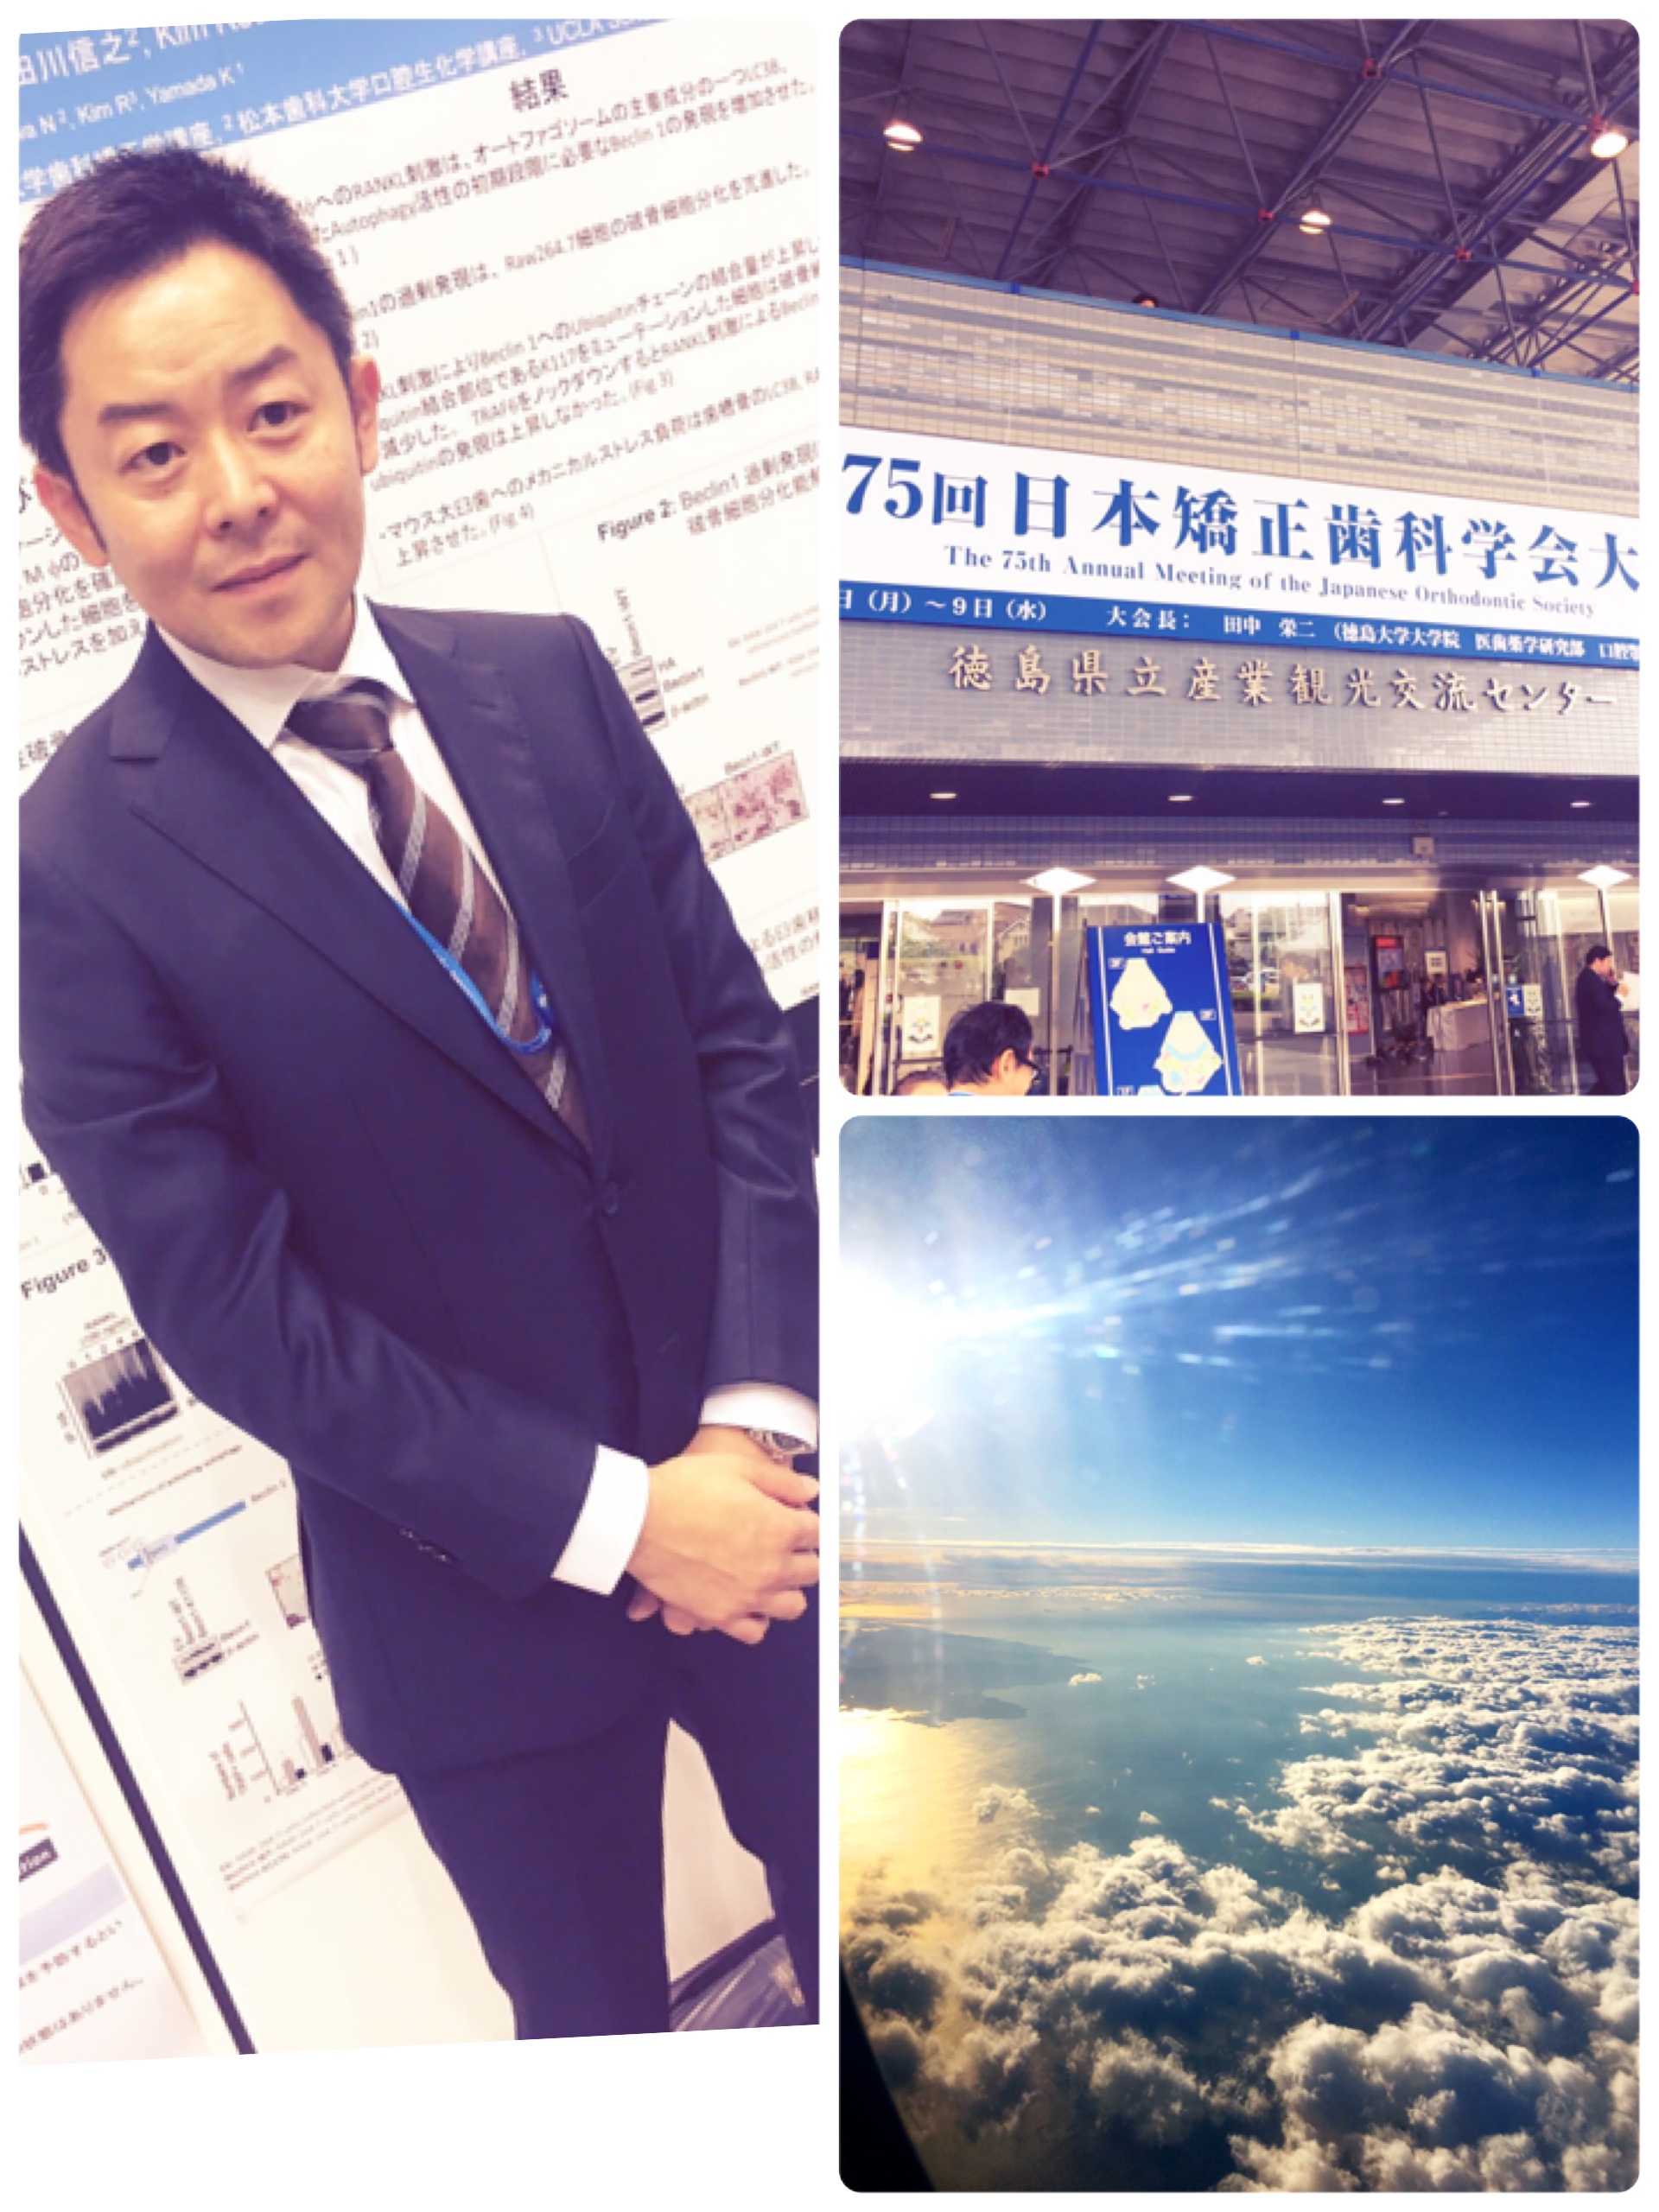 日本矯正歯科学会へ参加するため徳島へ行ってきました！